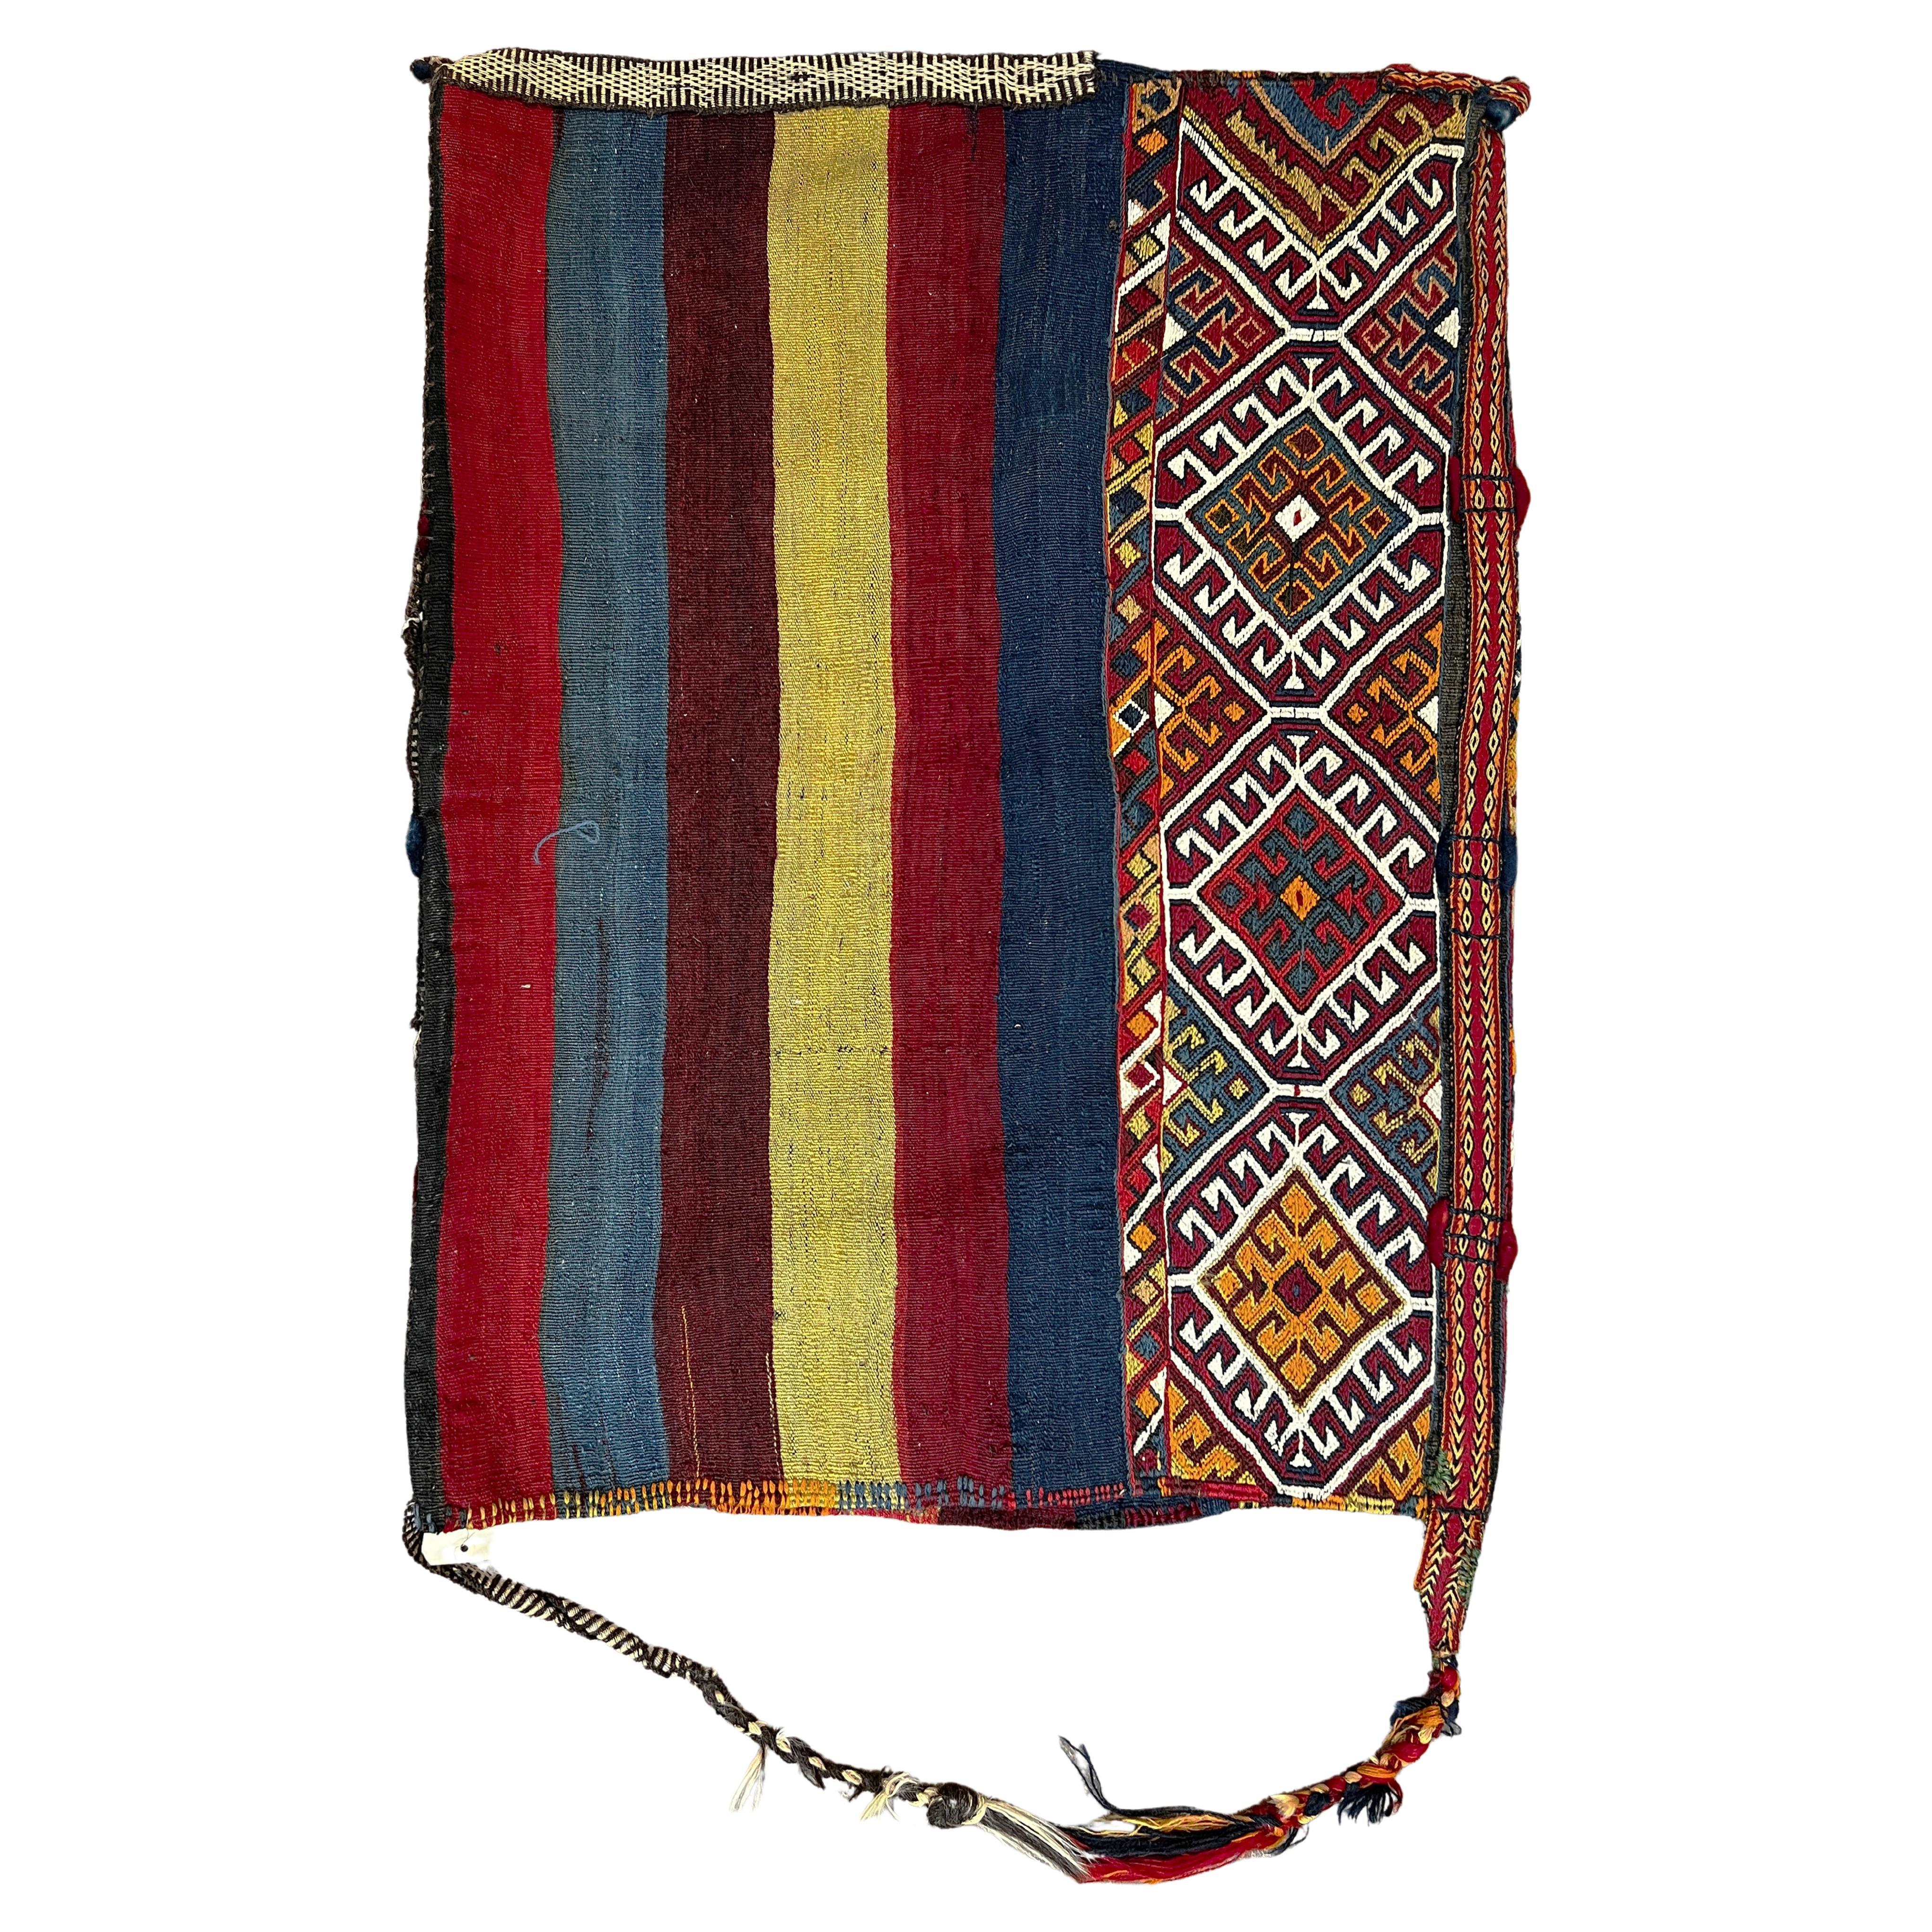 Bag of Turkish Kilim - No. 764 For Sale